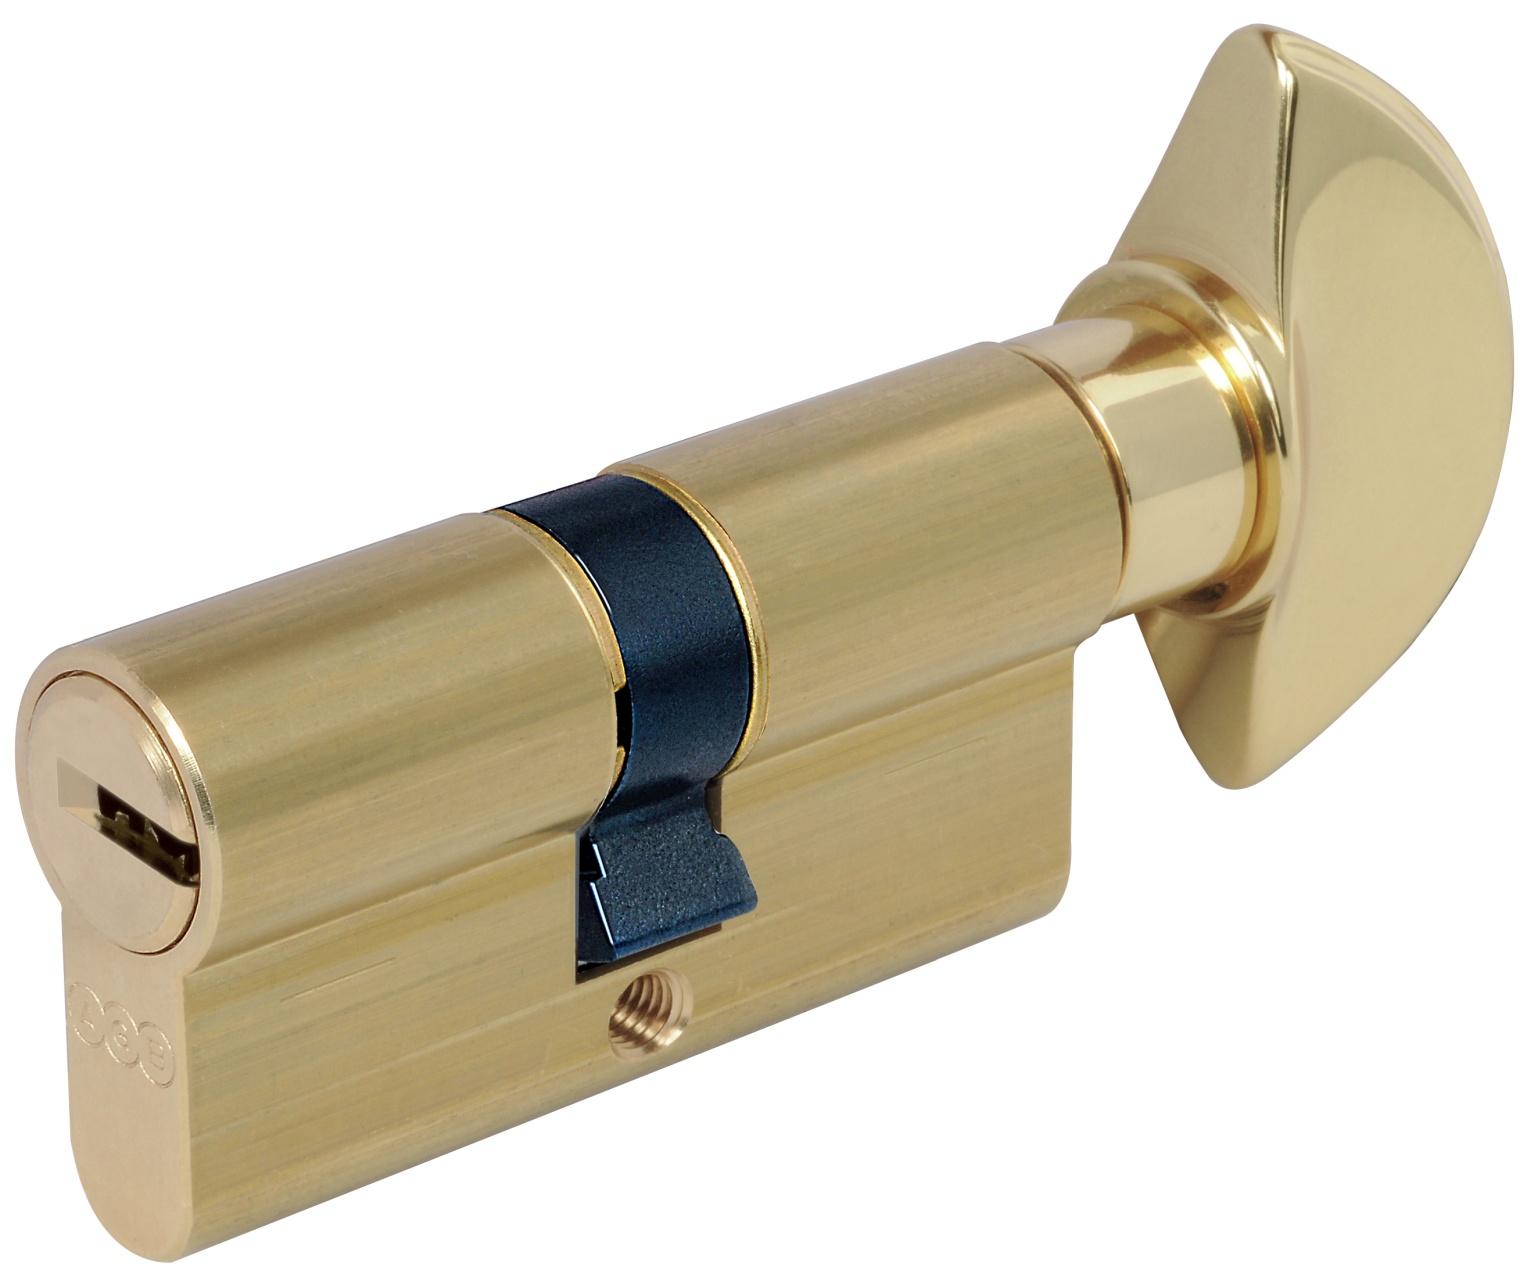 AGB -  Cilindro SCUDO 5000 PS frizionato anti bamping con chiave e pomolo - col. NICHELATO OPACO - lunghezza 105 - misura 35-10-60